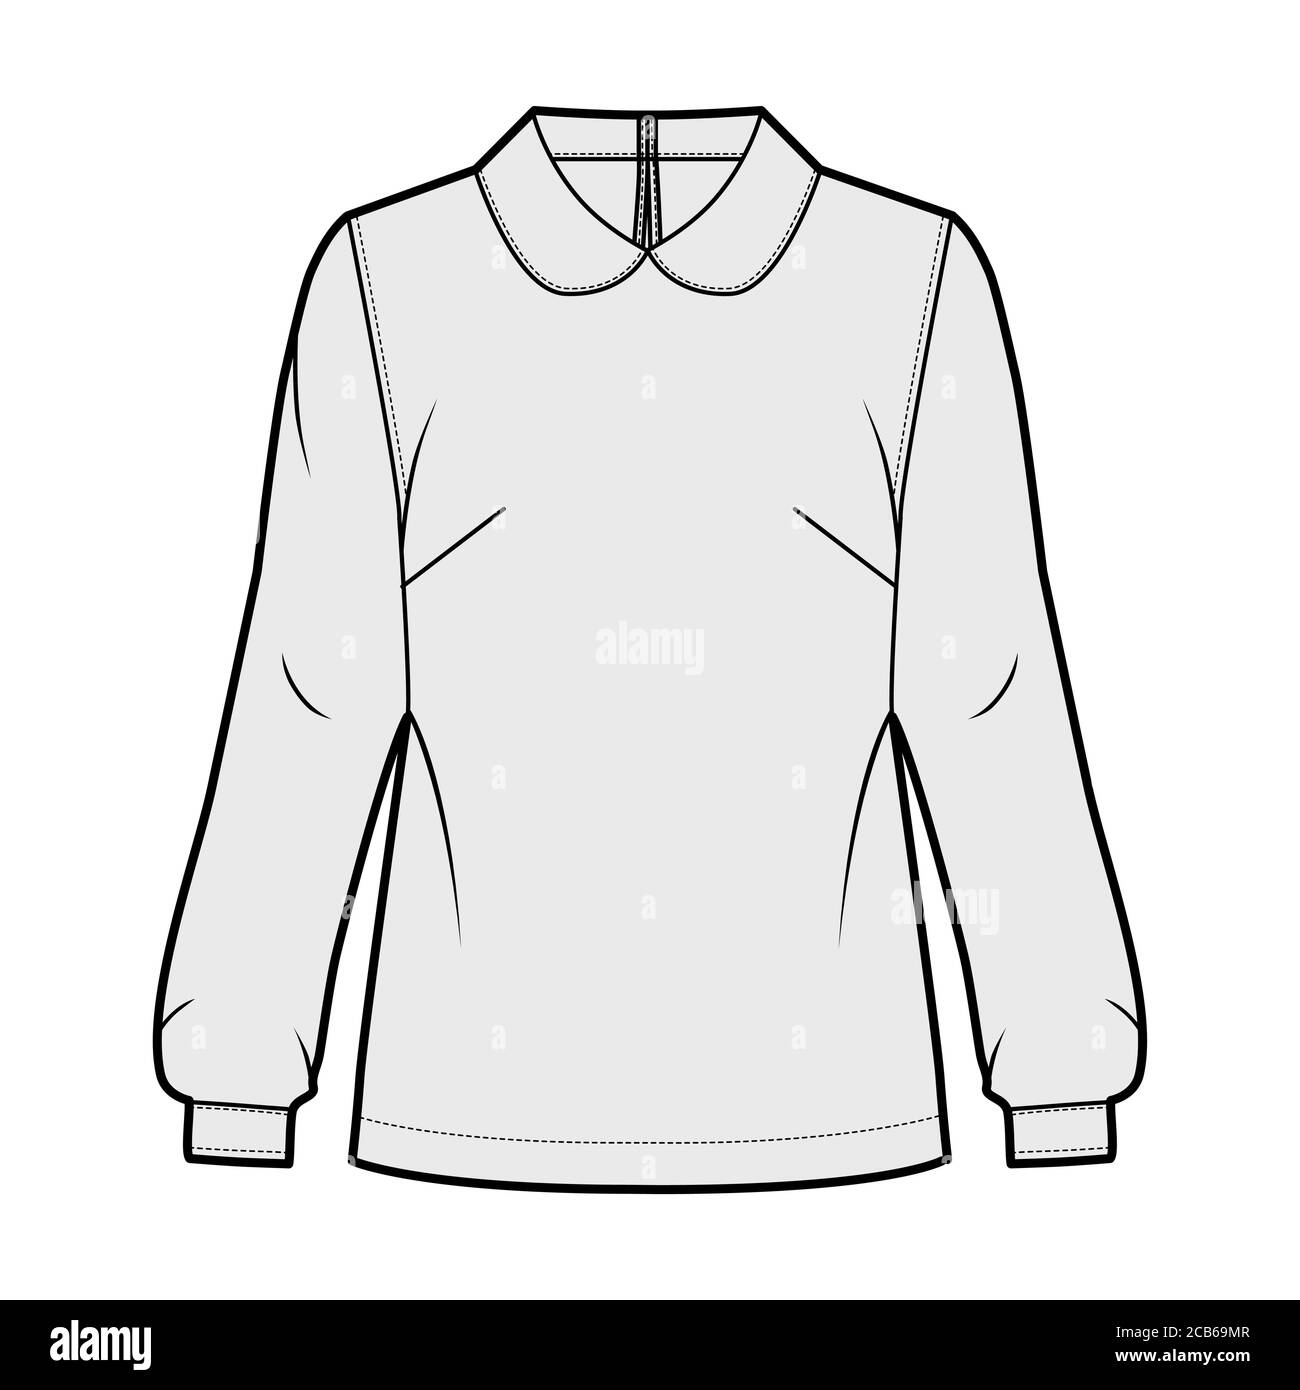 Blusa de cuello redondo ilustración técnica de moda con silueta suelta, manga  larga de camisa, cierre abotonado en la parte trasera keyhole. Plantilla de  indumentaria plana en la parte delantera, color gris.